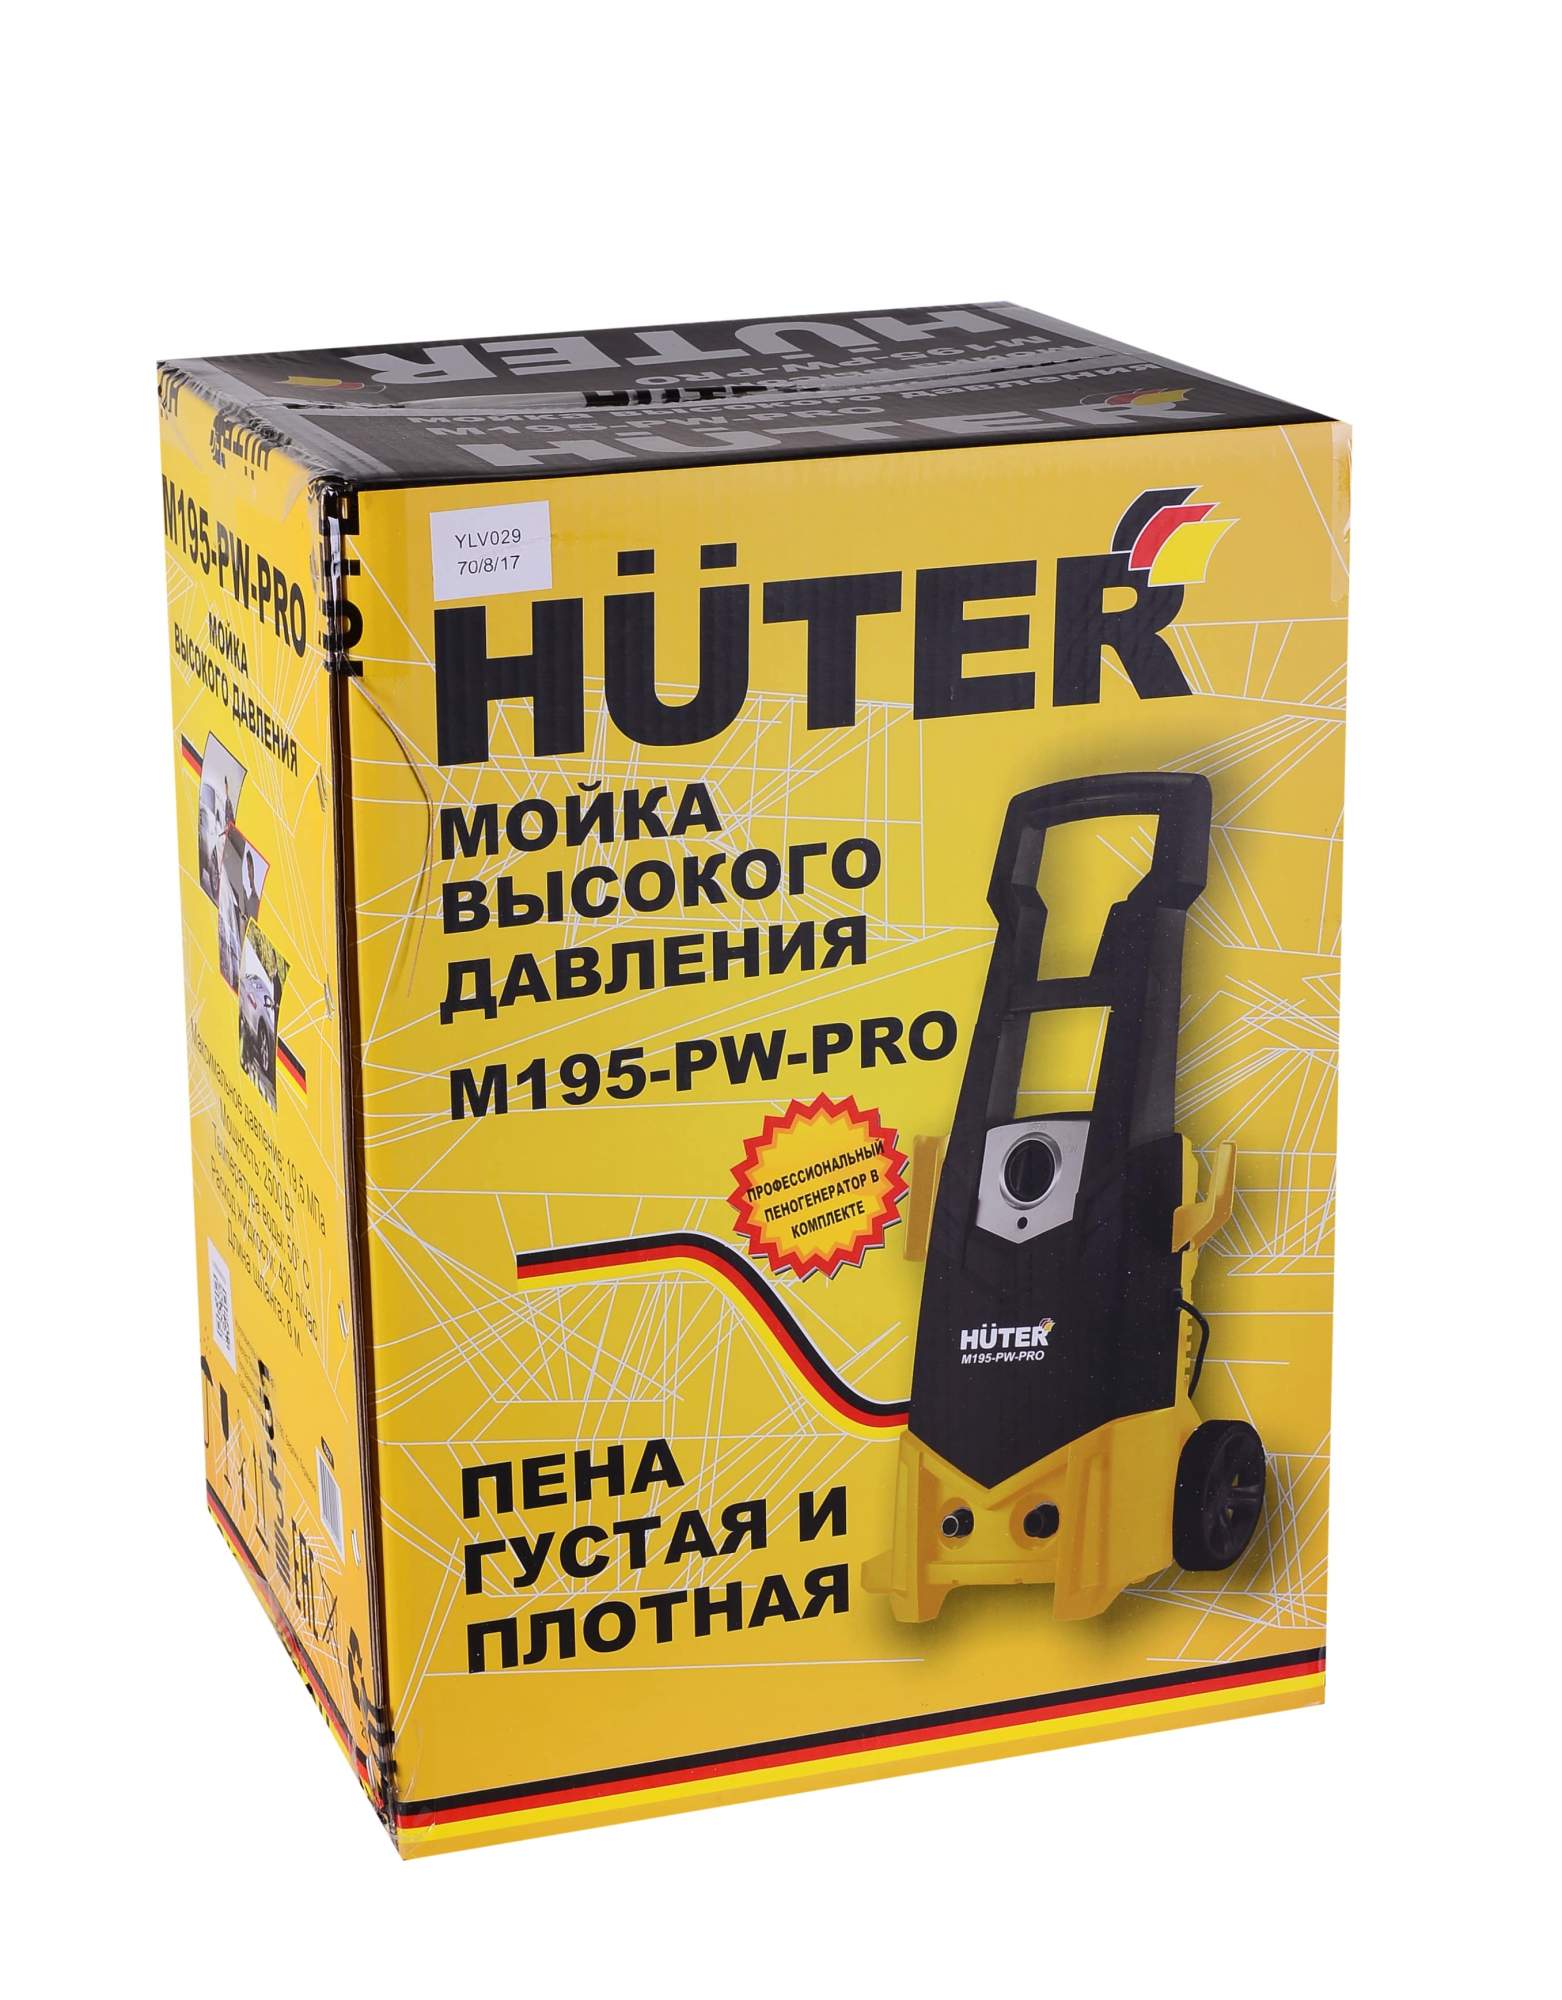  высокого давления электрическая Huter M195-PW-Pro, 2500 Вт .